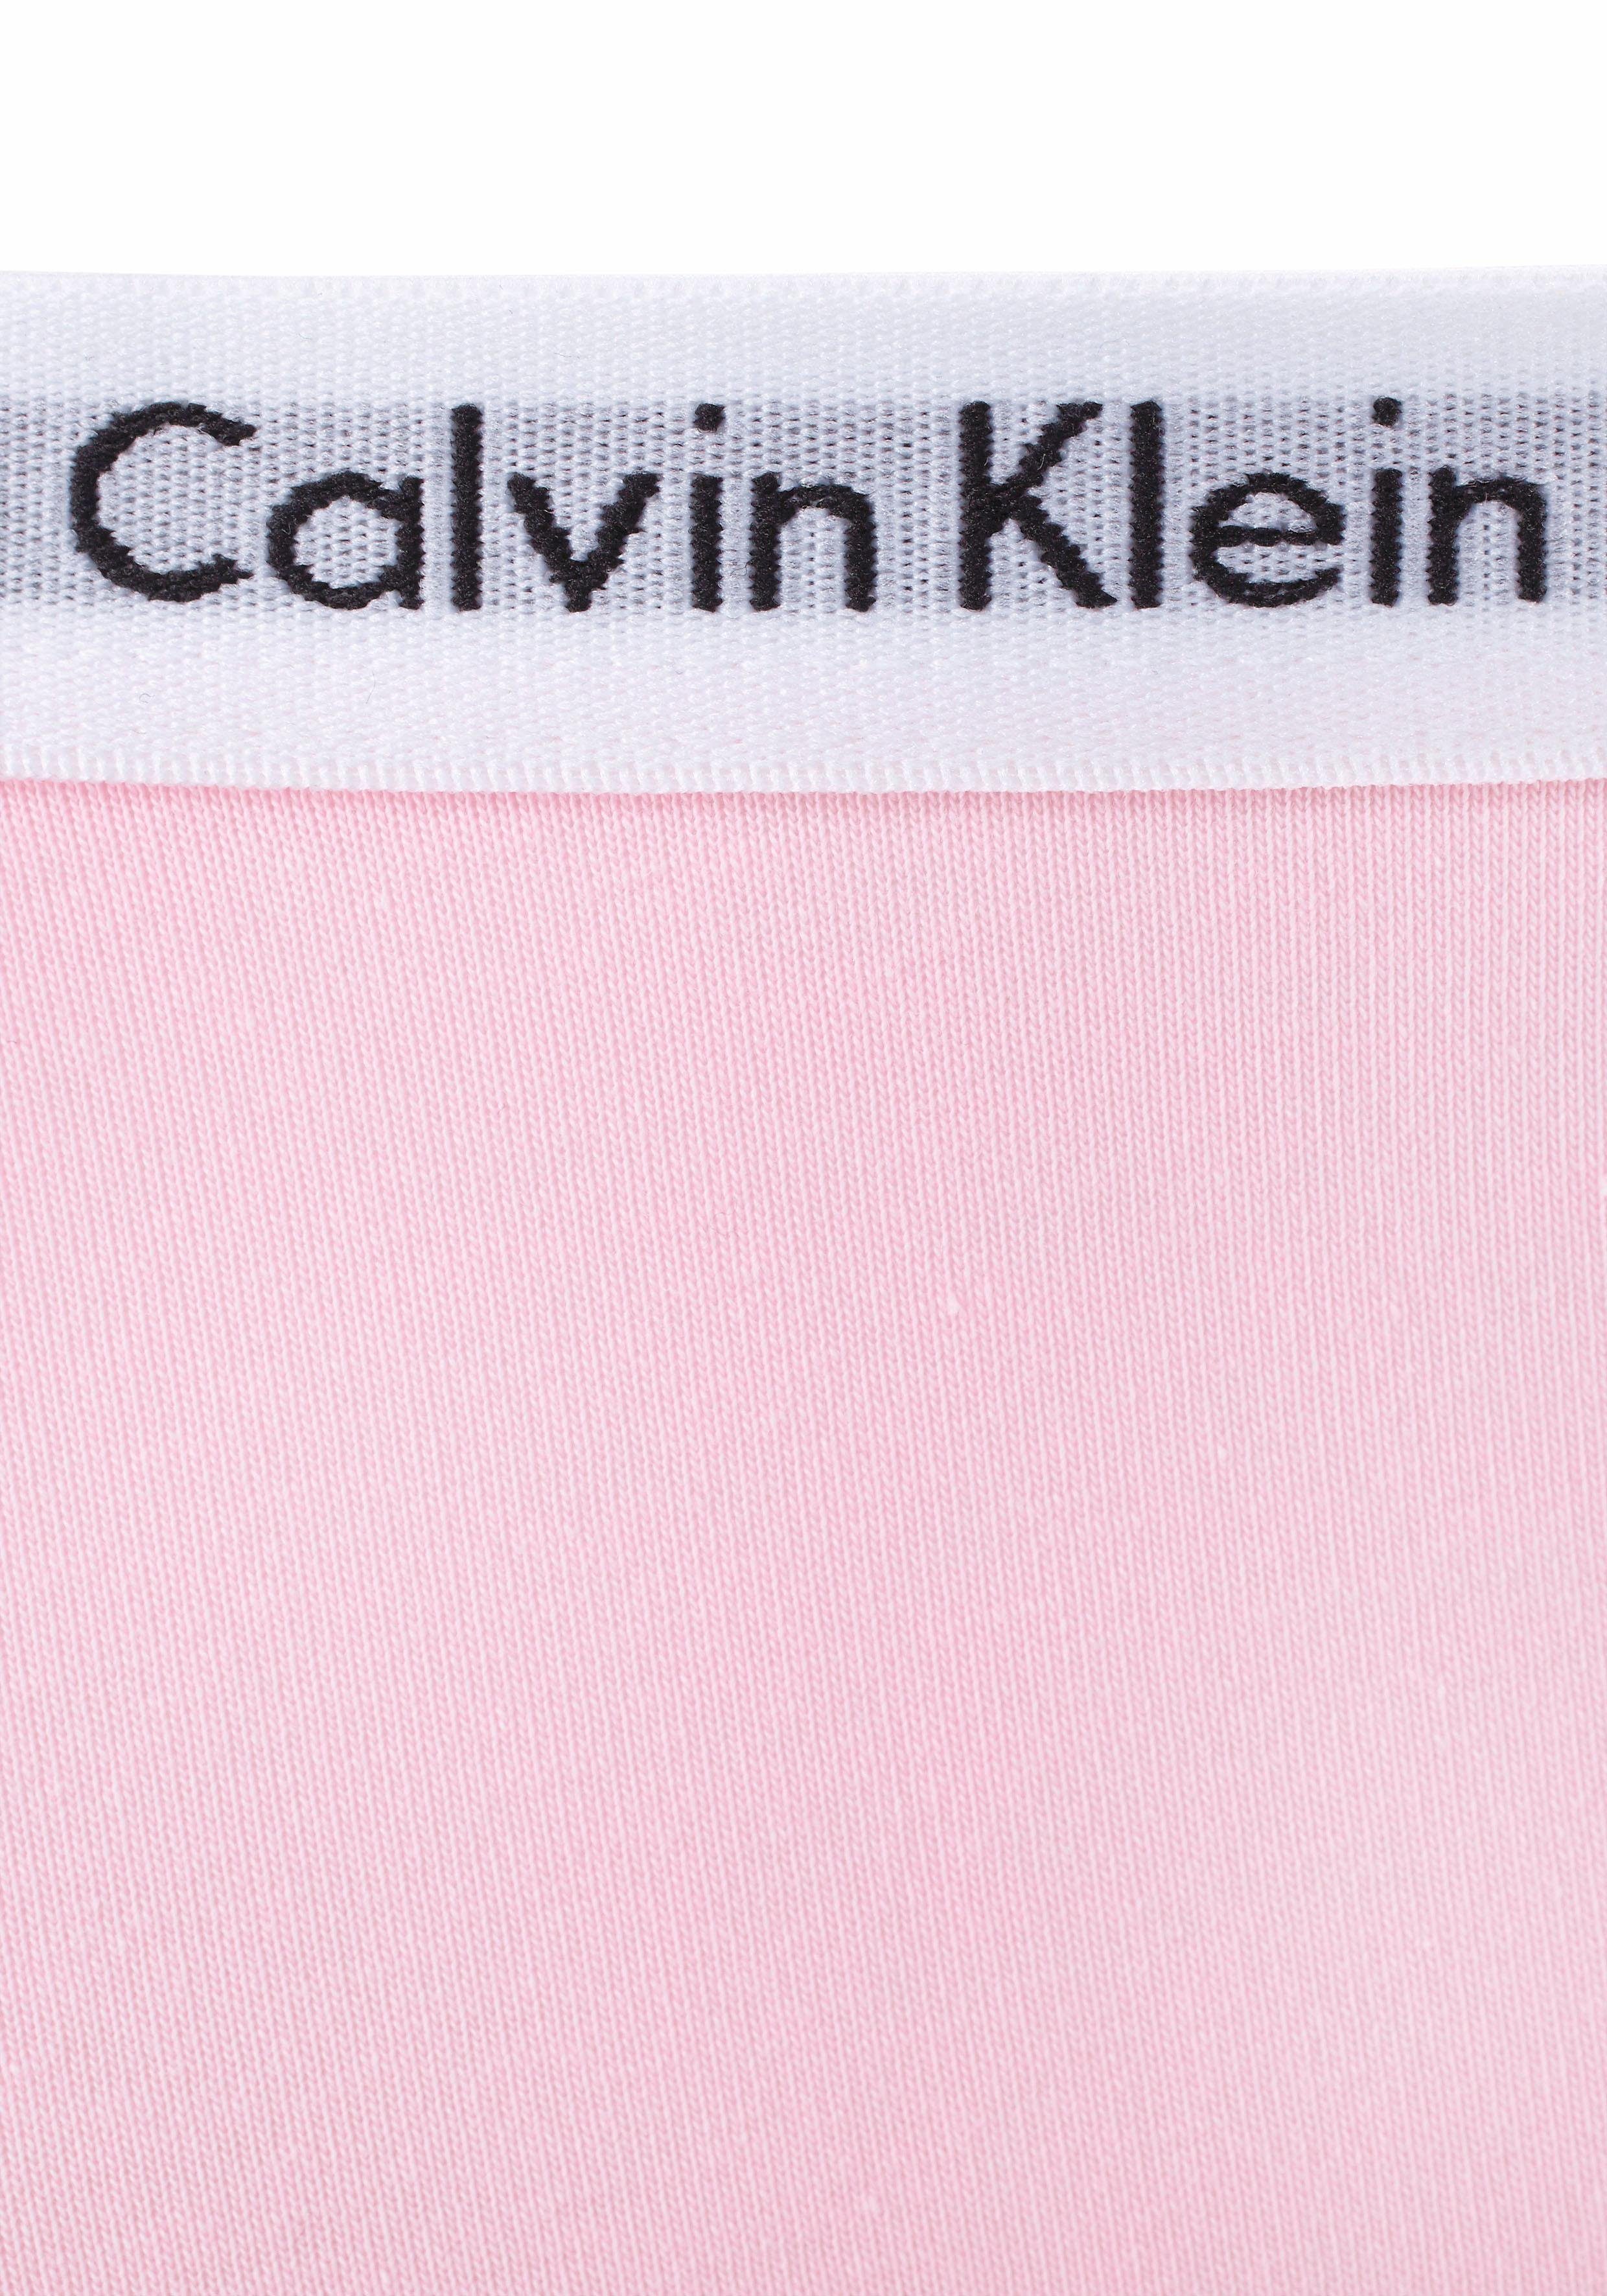 Mädchen Klein Calvin mit Junior Logobund Underwear MiniMe,für Kinder Panty Kids (2-St)